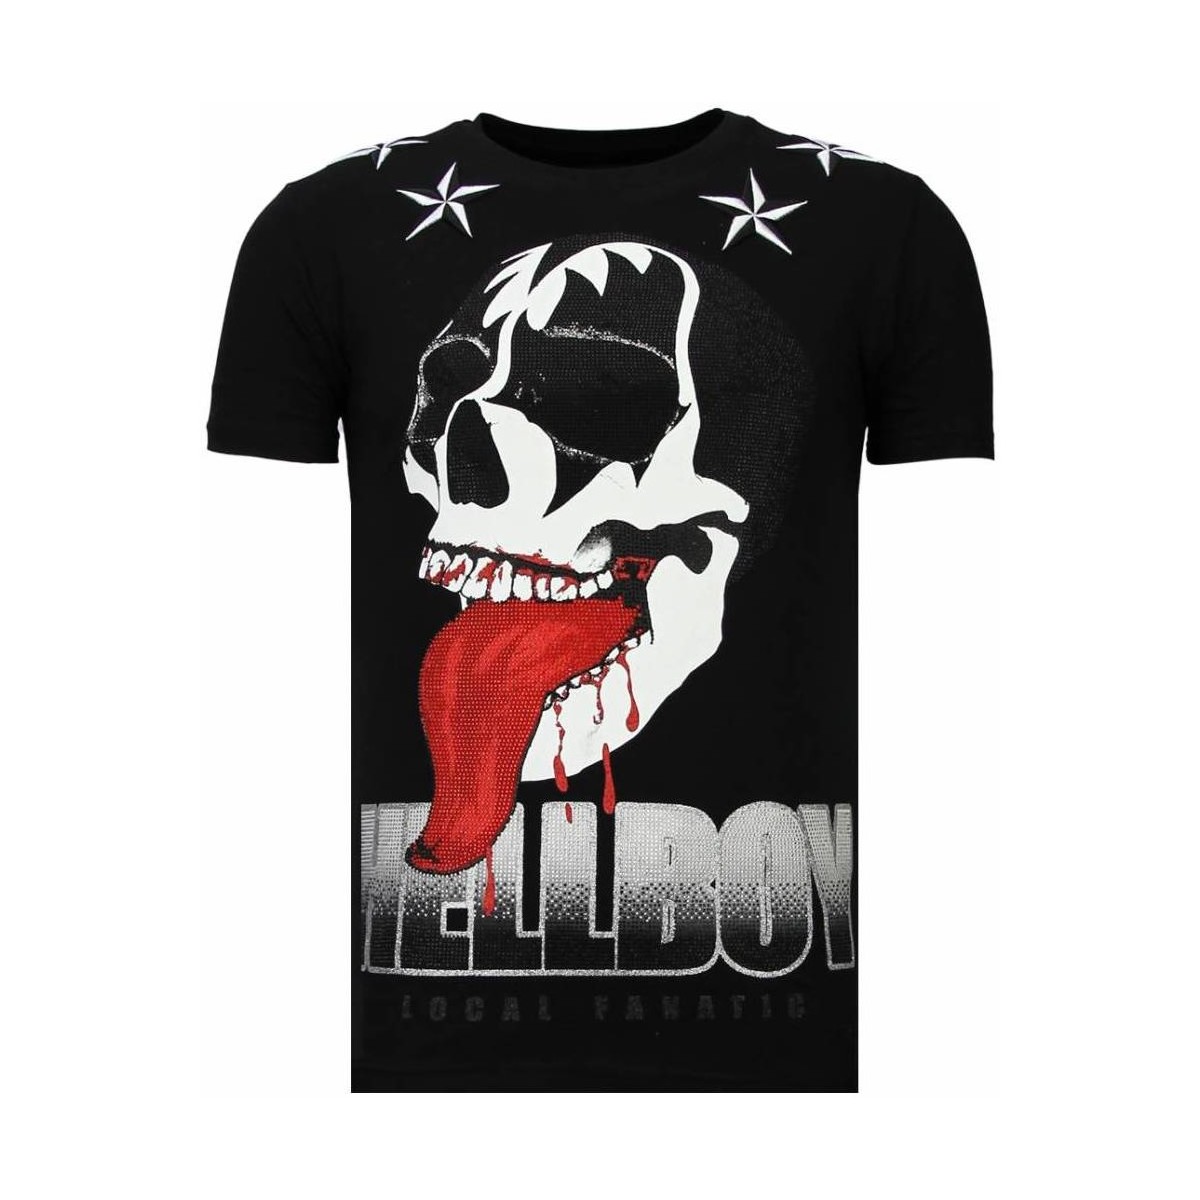 Textiel Heren T-shirts korte mouwen Local Fanatic Hellboy Rhinestone Zwart